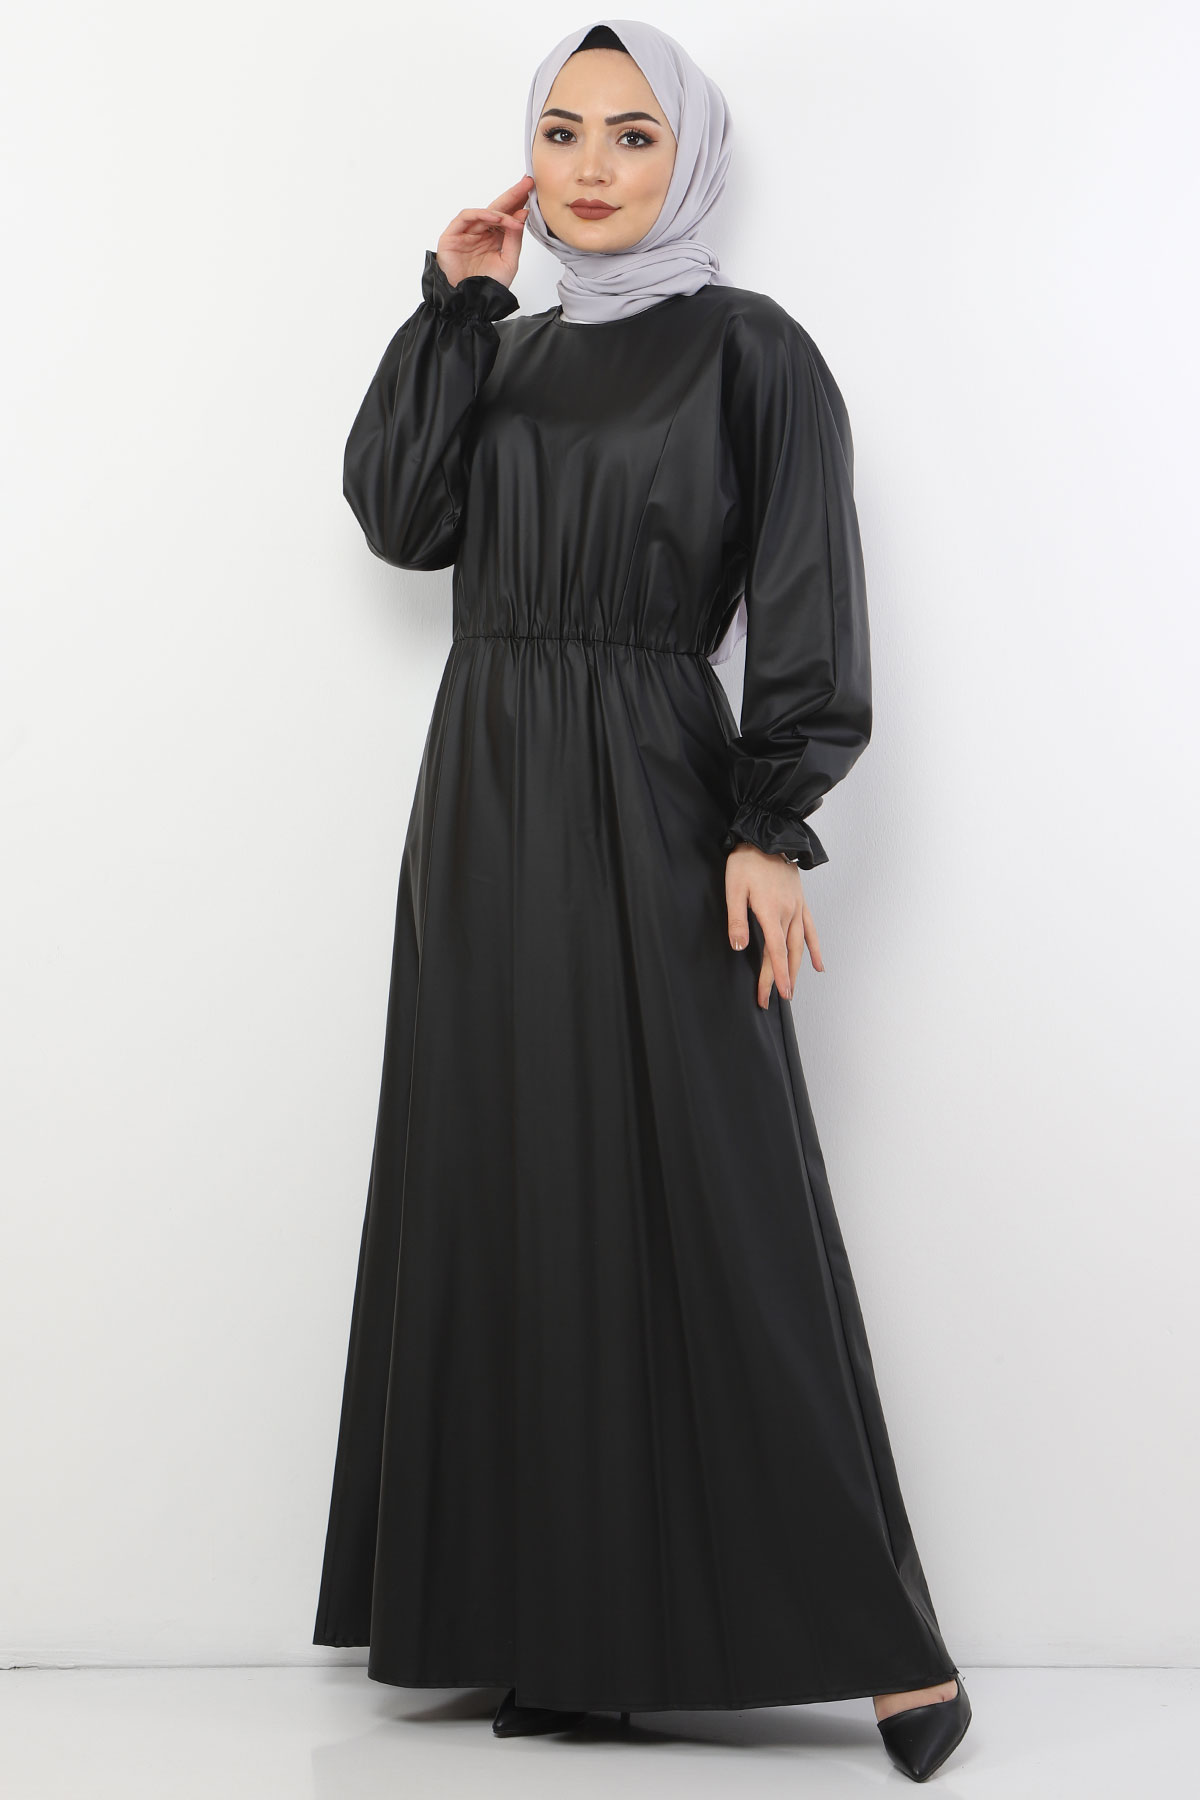 Tesettür Dünyası - Elastic Waist Leather Dress TSD9069 Black